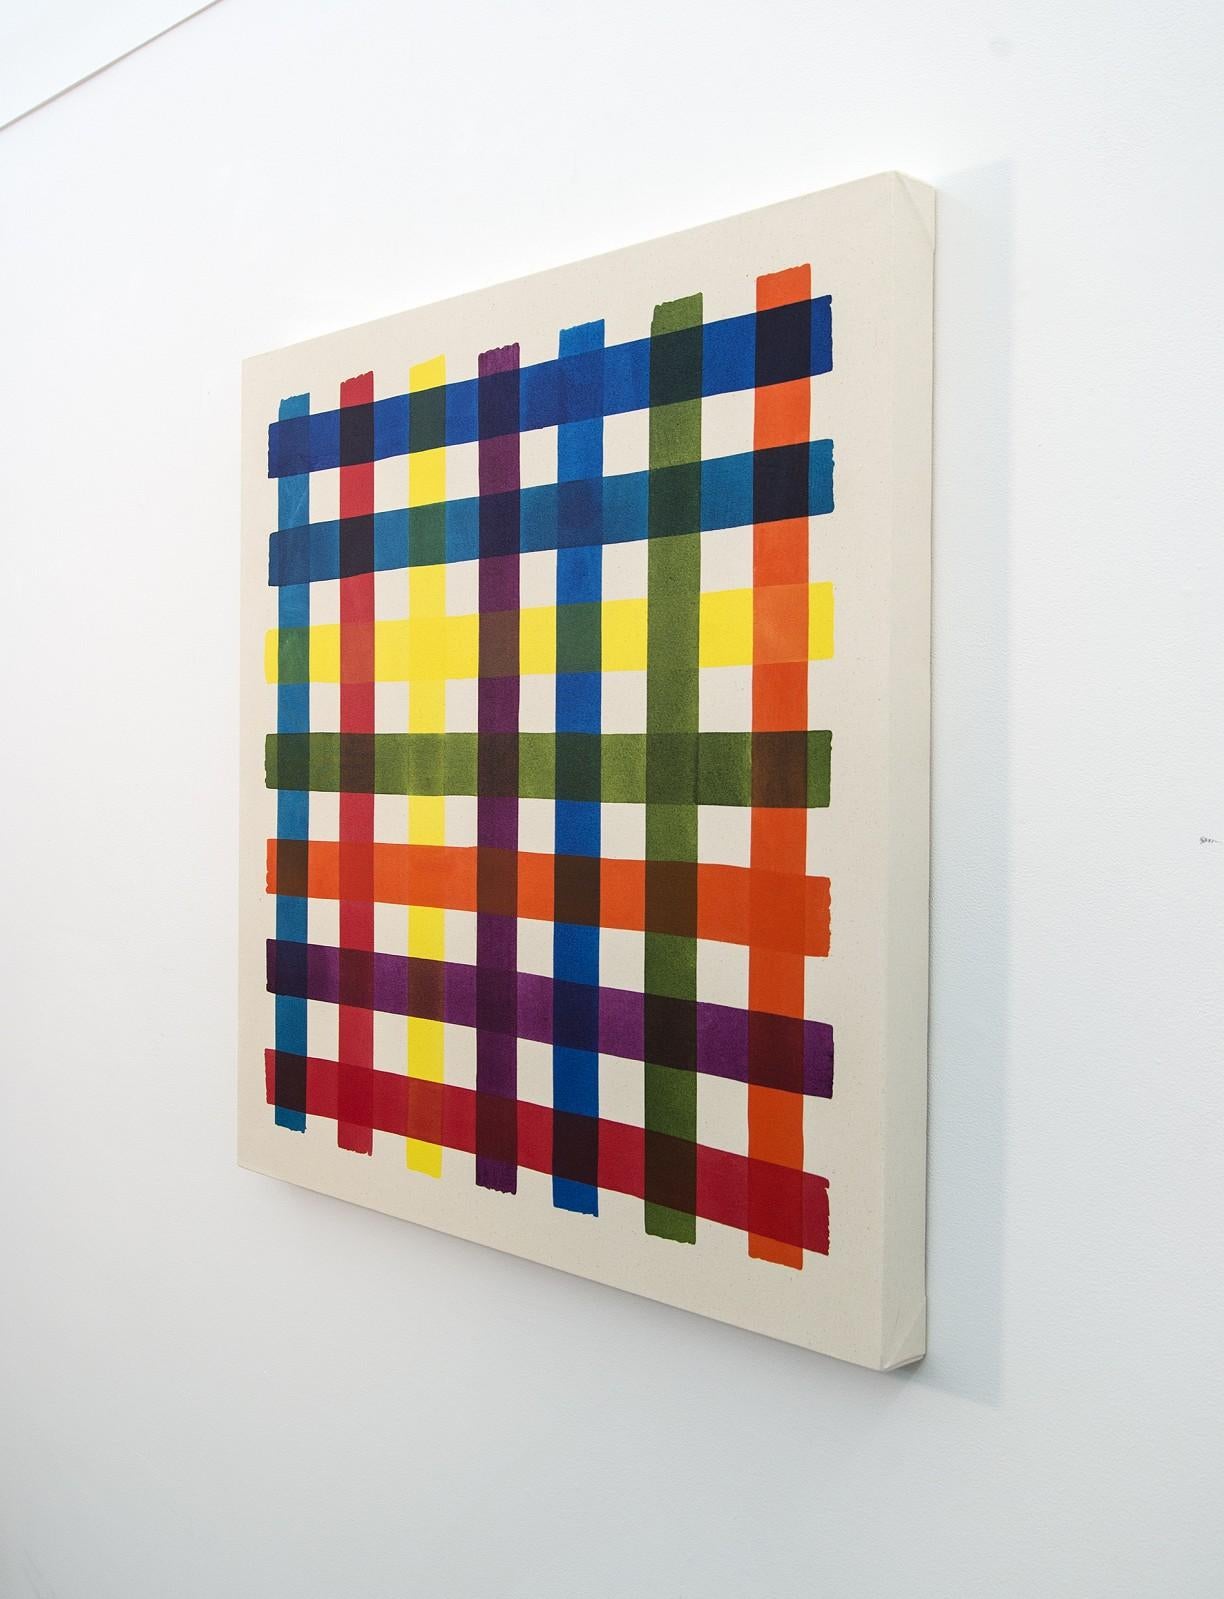 Les couleurs vives et brillantes du jaune, du vert, du bleu, de l'orange et du rouge attirent immédiatement l'attention du spectateur dans cette peinture acrylique audacieuse de l'artiste de Calgary Aron Hill. Sur le plan conceptuel, l'œuvre de Hill